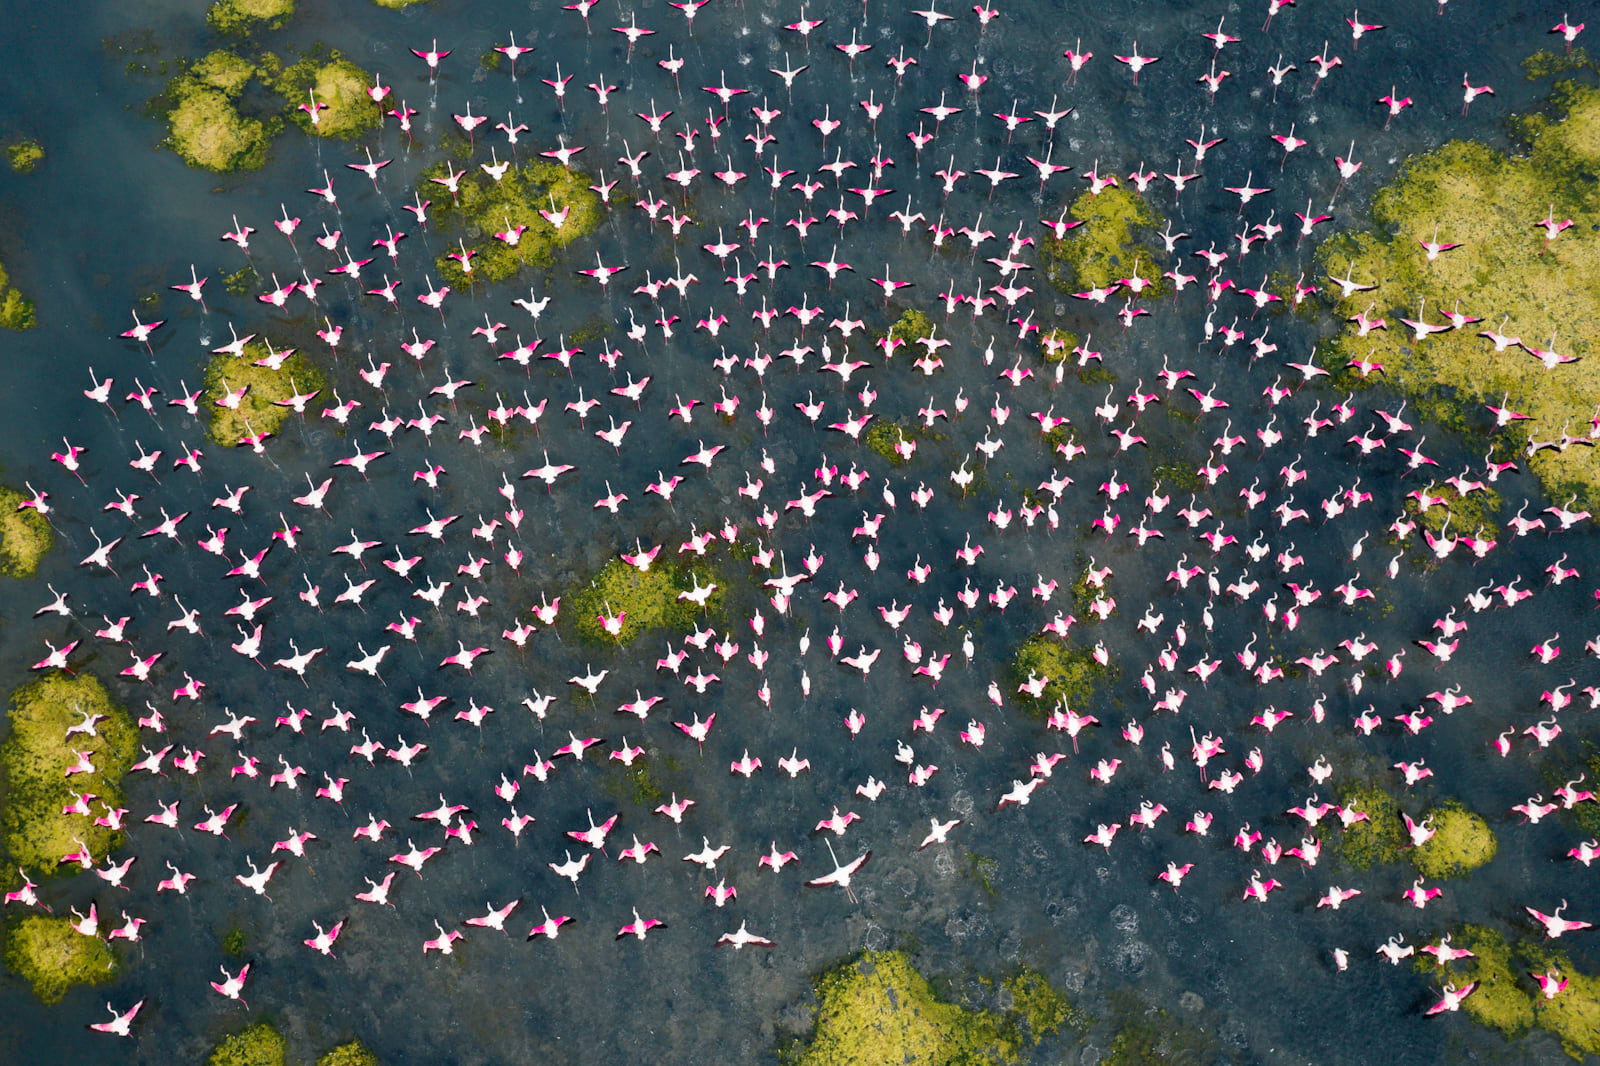 Fotograf dokumentiert "Rosa Armee" Blickfang in einem indischen See